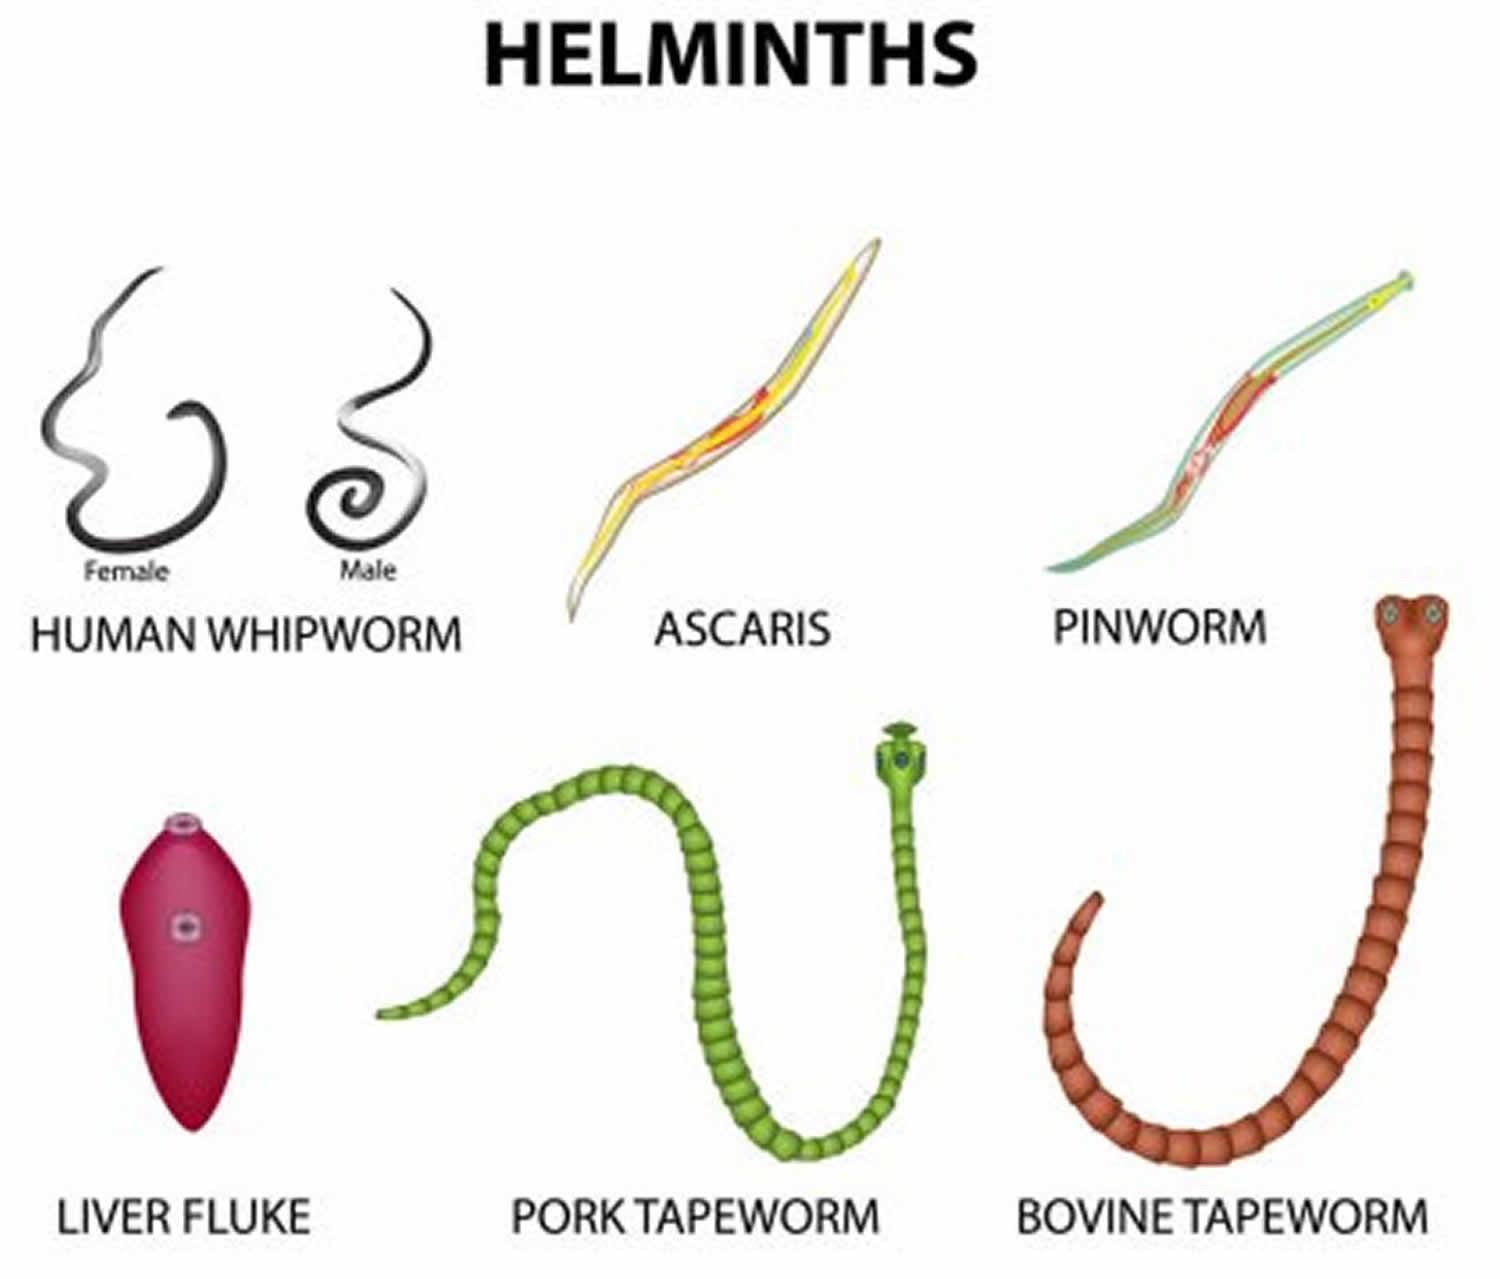 helminthopsis ás)